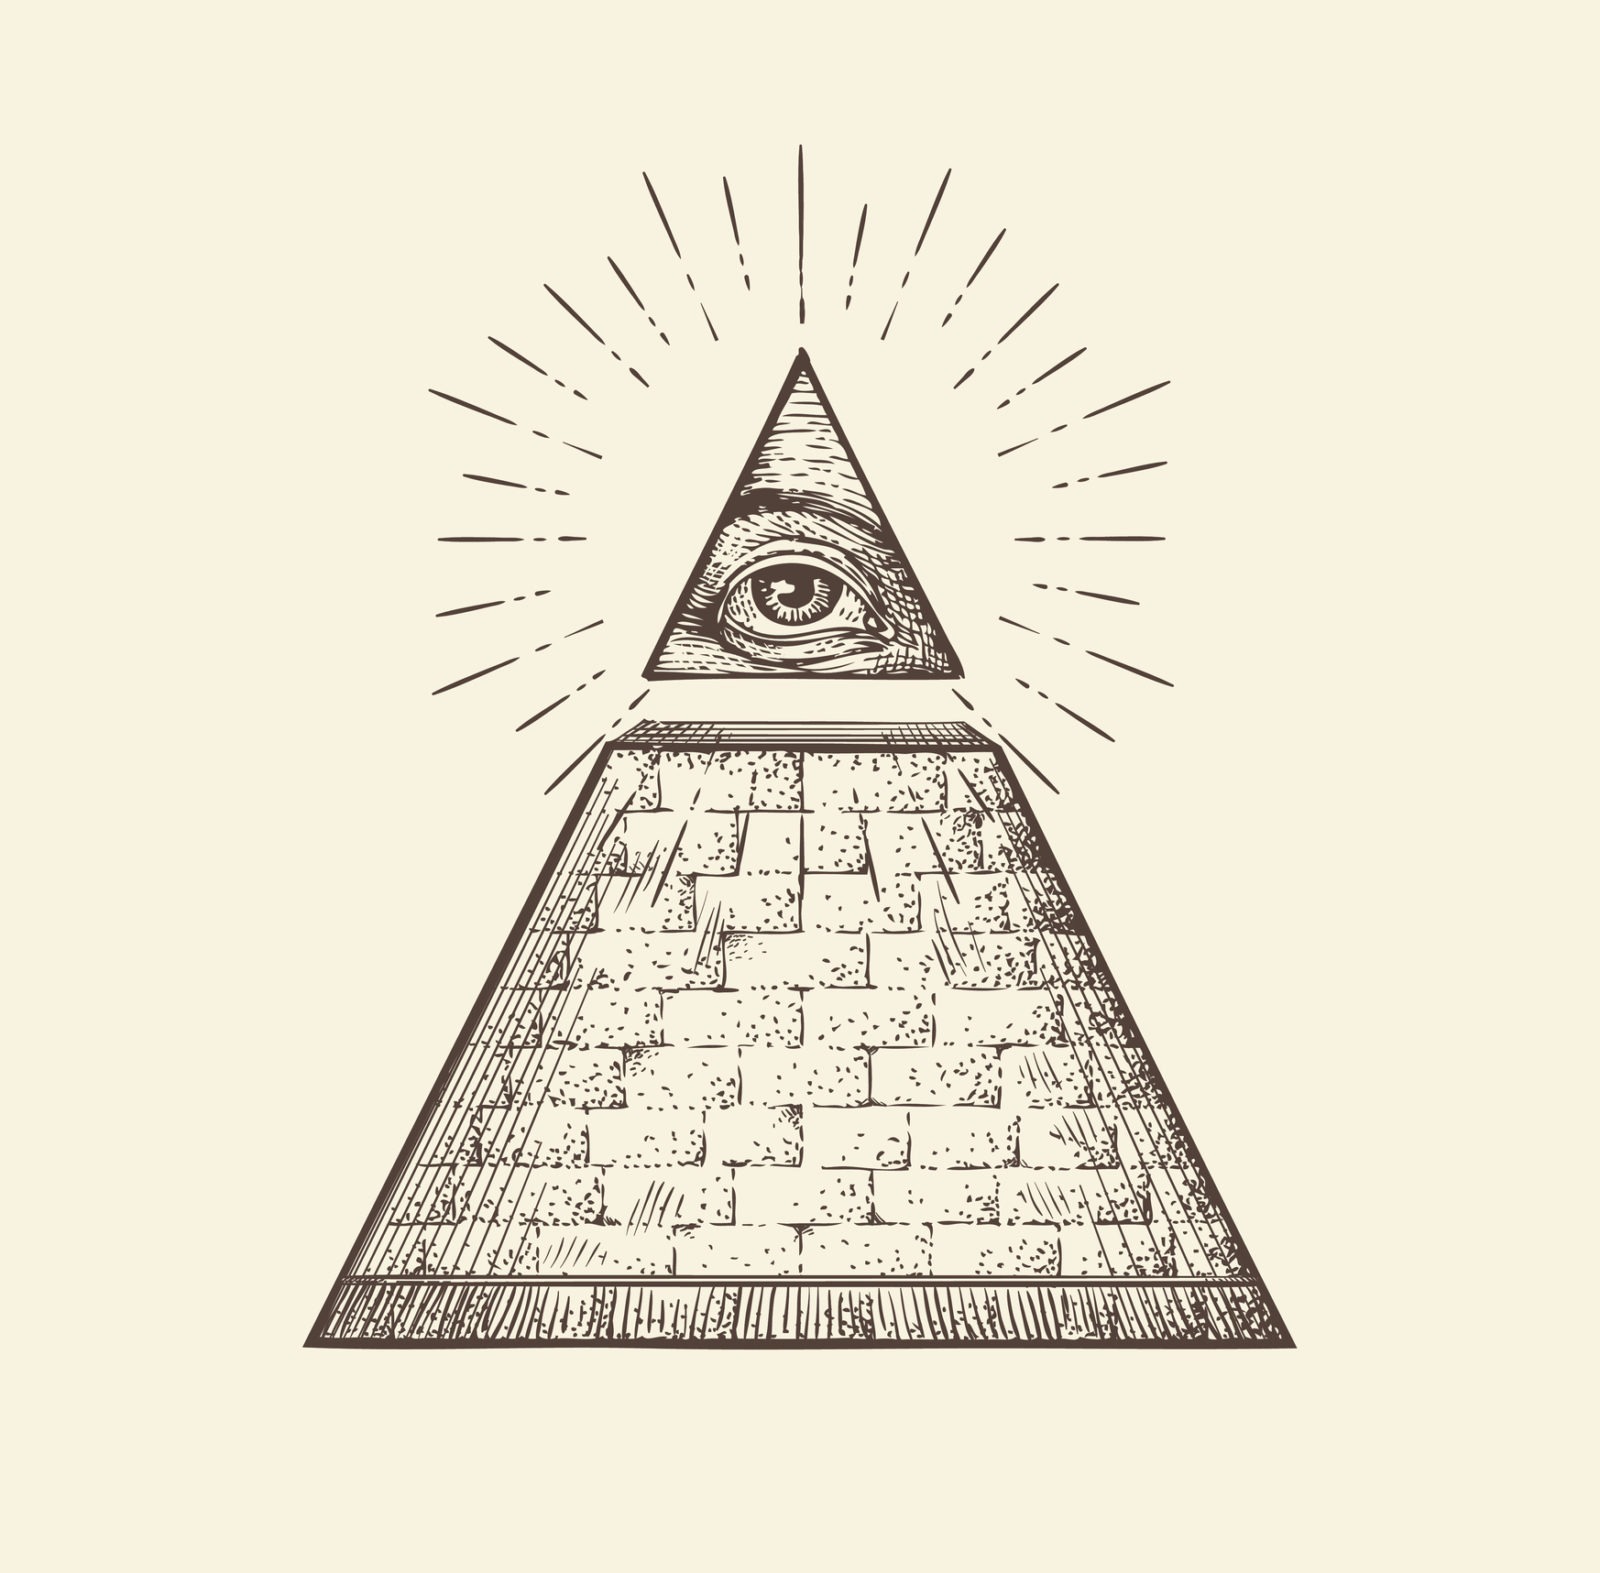 A Brief History of the Illuminati
